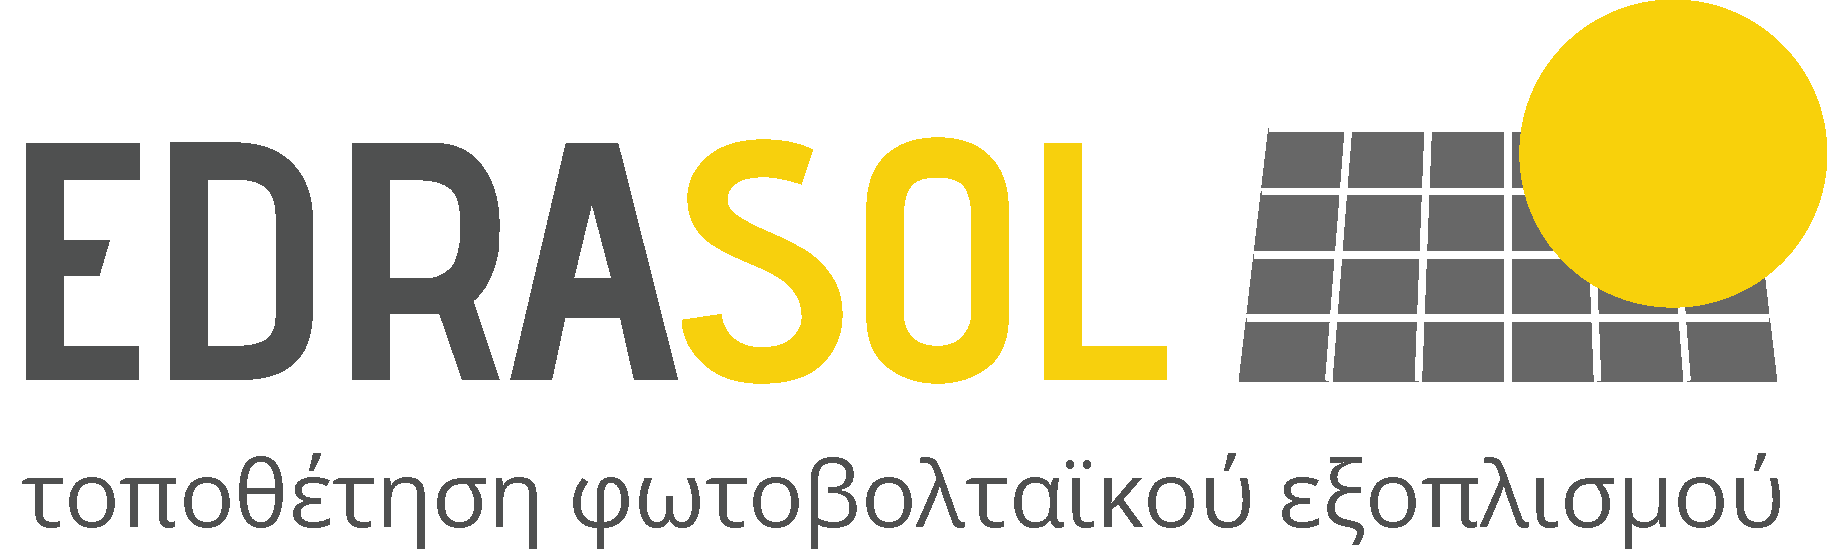 EDRASOL - Τοποθέτηση Φωτοβολταϊκού Εξοπλισμού - Πασσαλόμπηξη Φωτοβολταϊκών